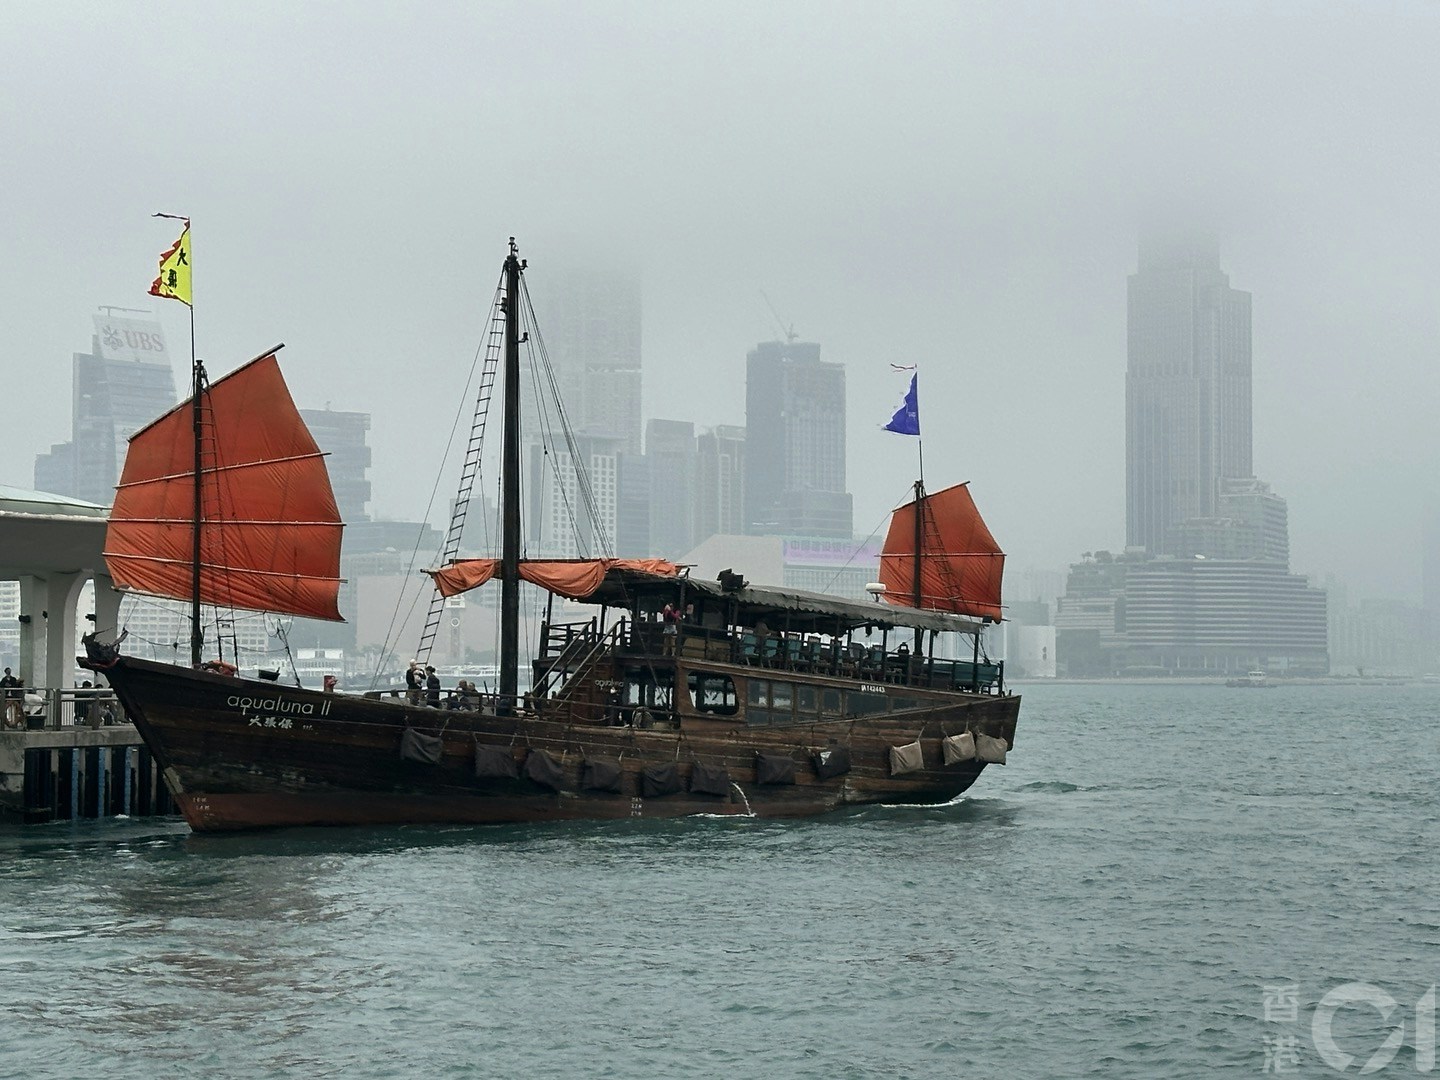 3月16日潮湿有雾，维港一片灰蒙蒙，在中环海滨望向对岸，可见部份大厦高层被云雾遮蔽，海上的红色帆船份外抢眼。（倪清江摄）